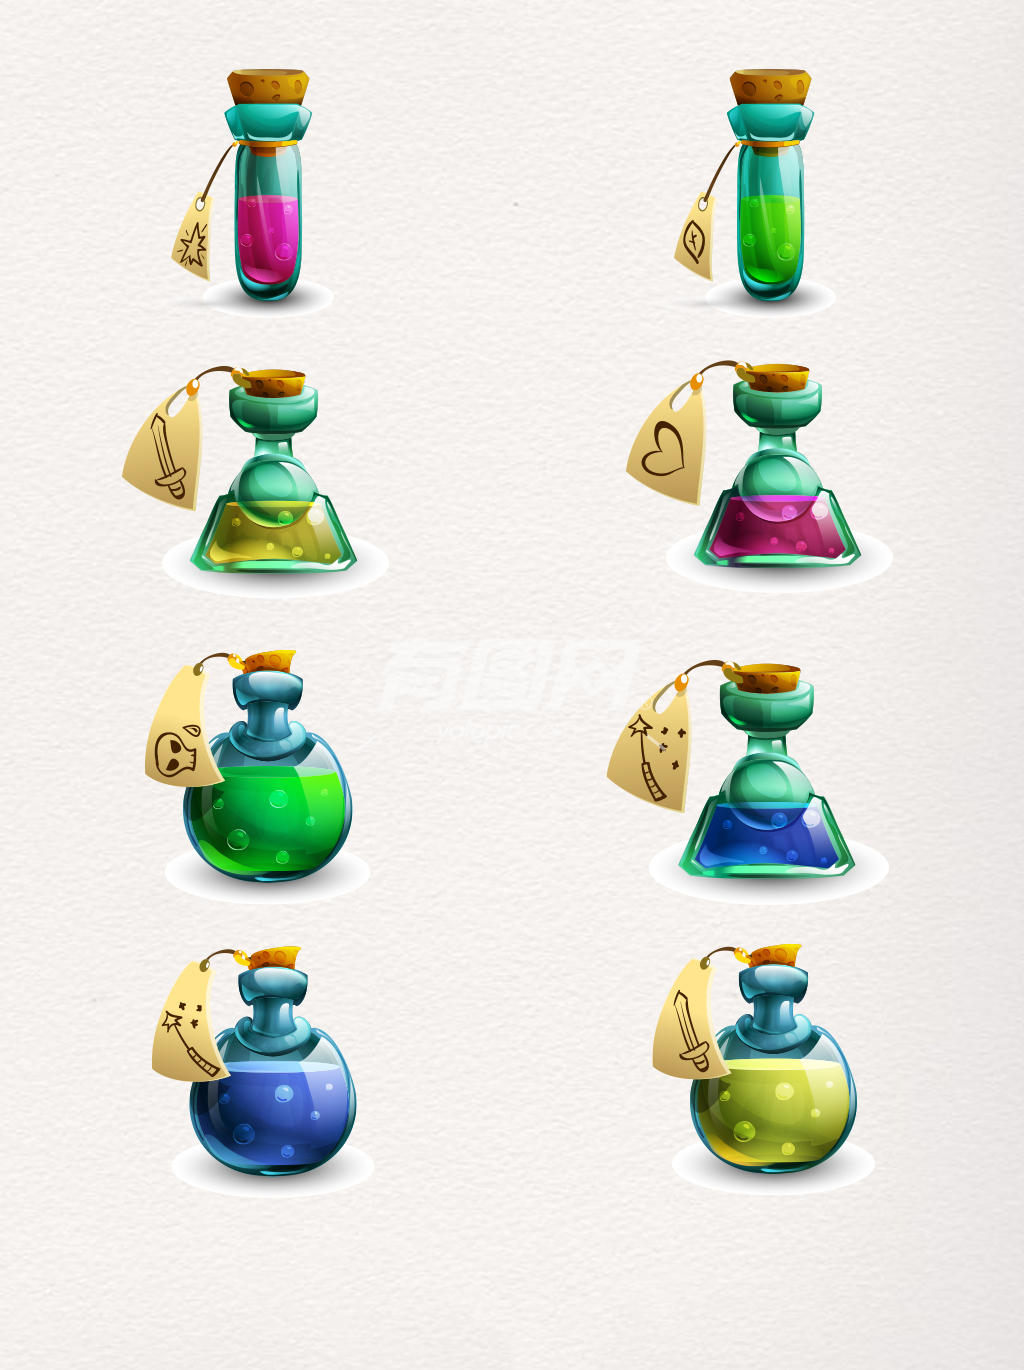 游戏能量药水瓶图标设计元素素材